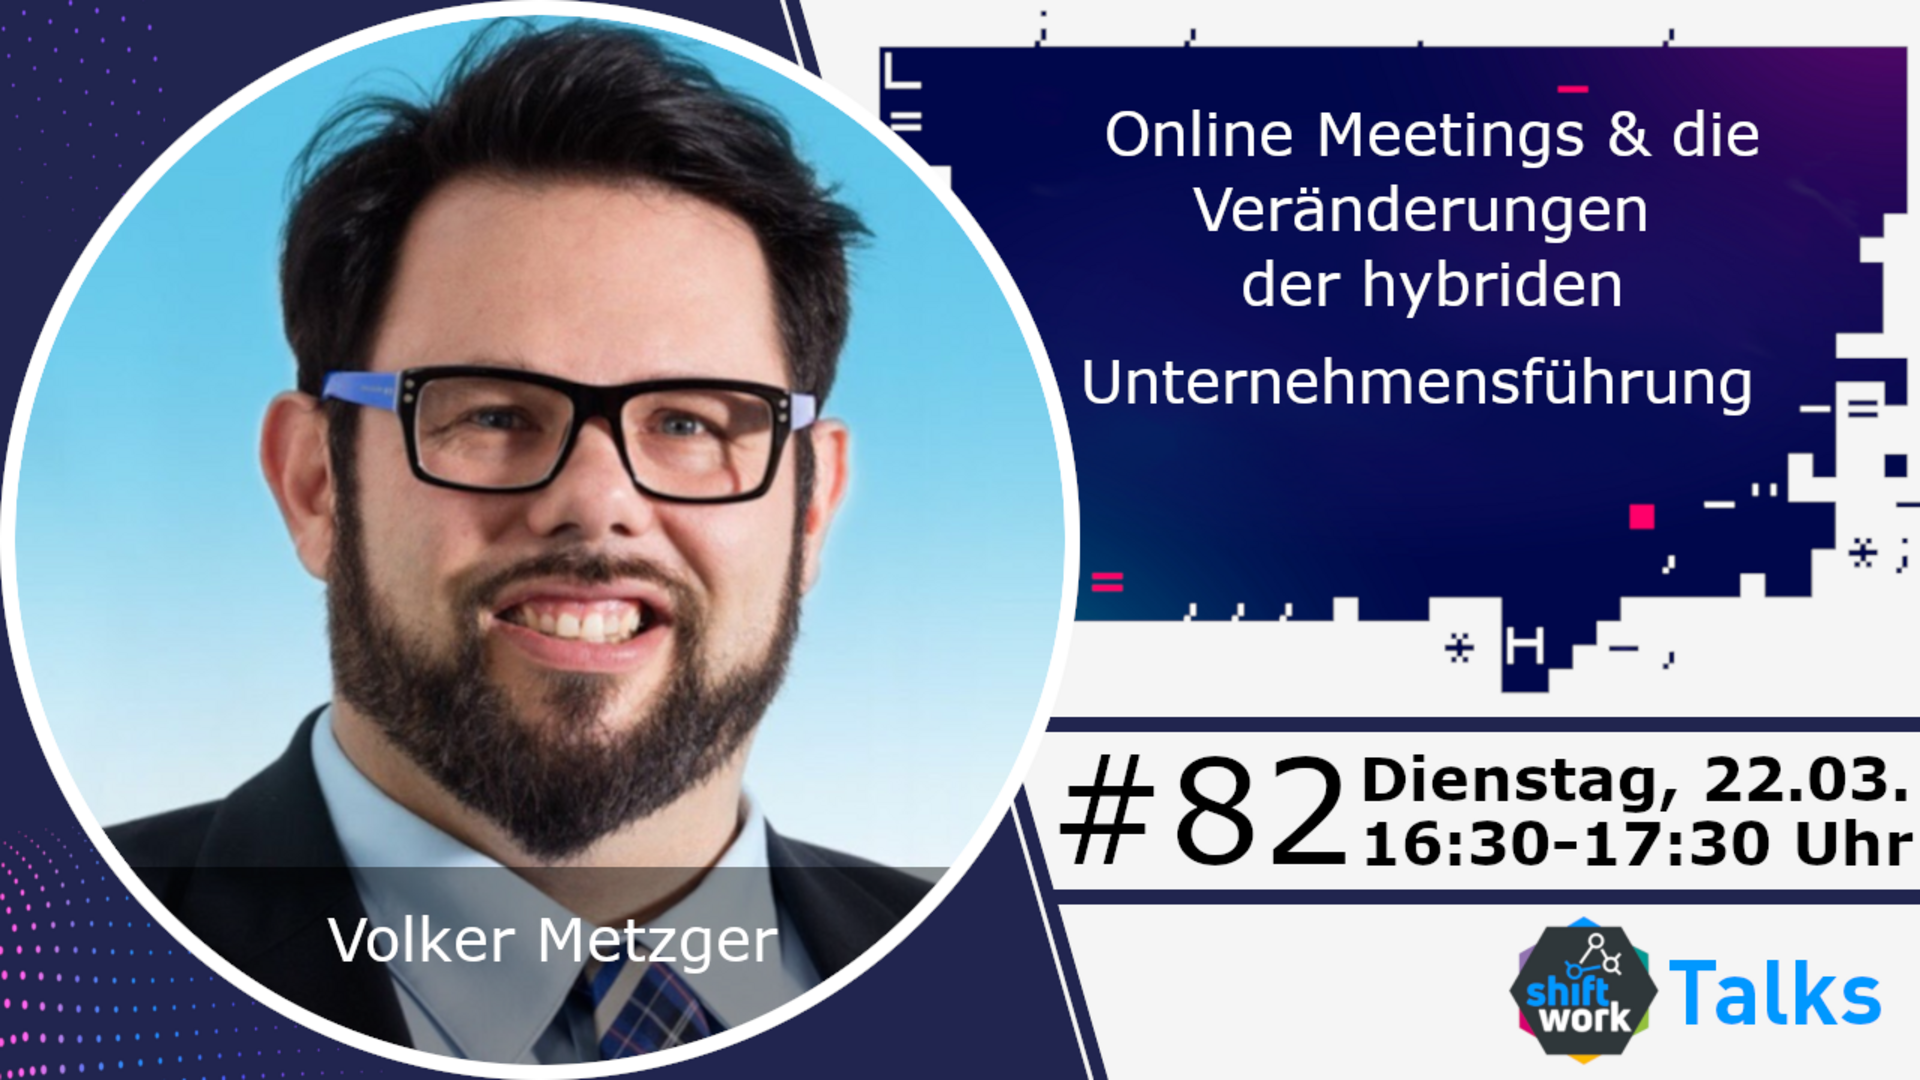 Im Gespräch mit Volker Metzger zu Online Meetings und den Veränderungen zur hybriden Unternehmensführung